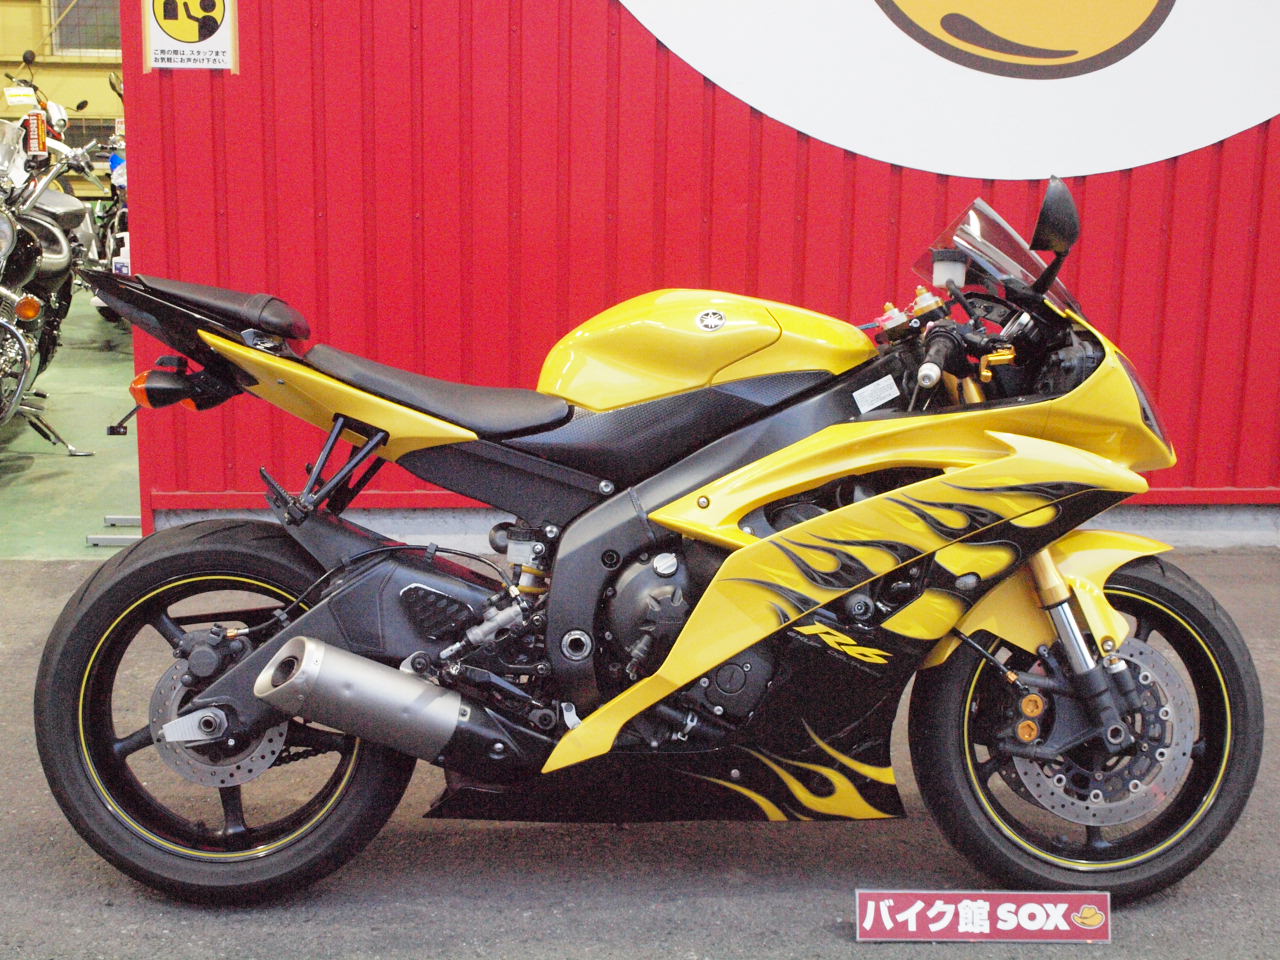 Yzf R6 ヤマハのミドルスーパースポーツ バイク館 ブログ 珍しい独自輸入バイクが多数あります